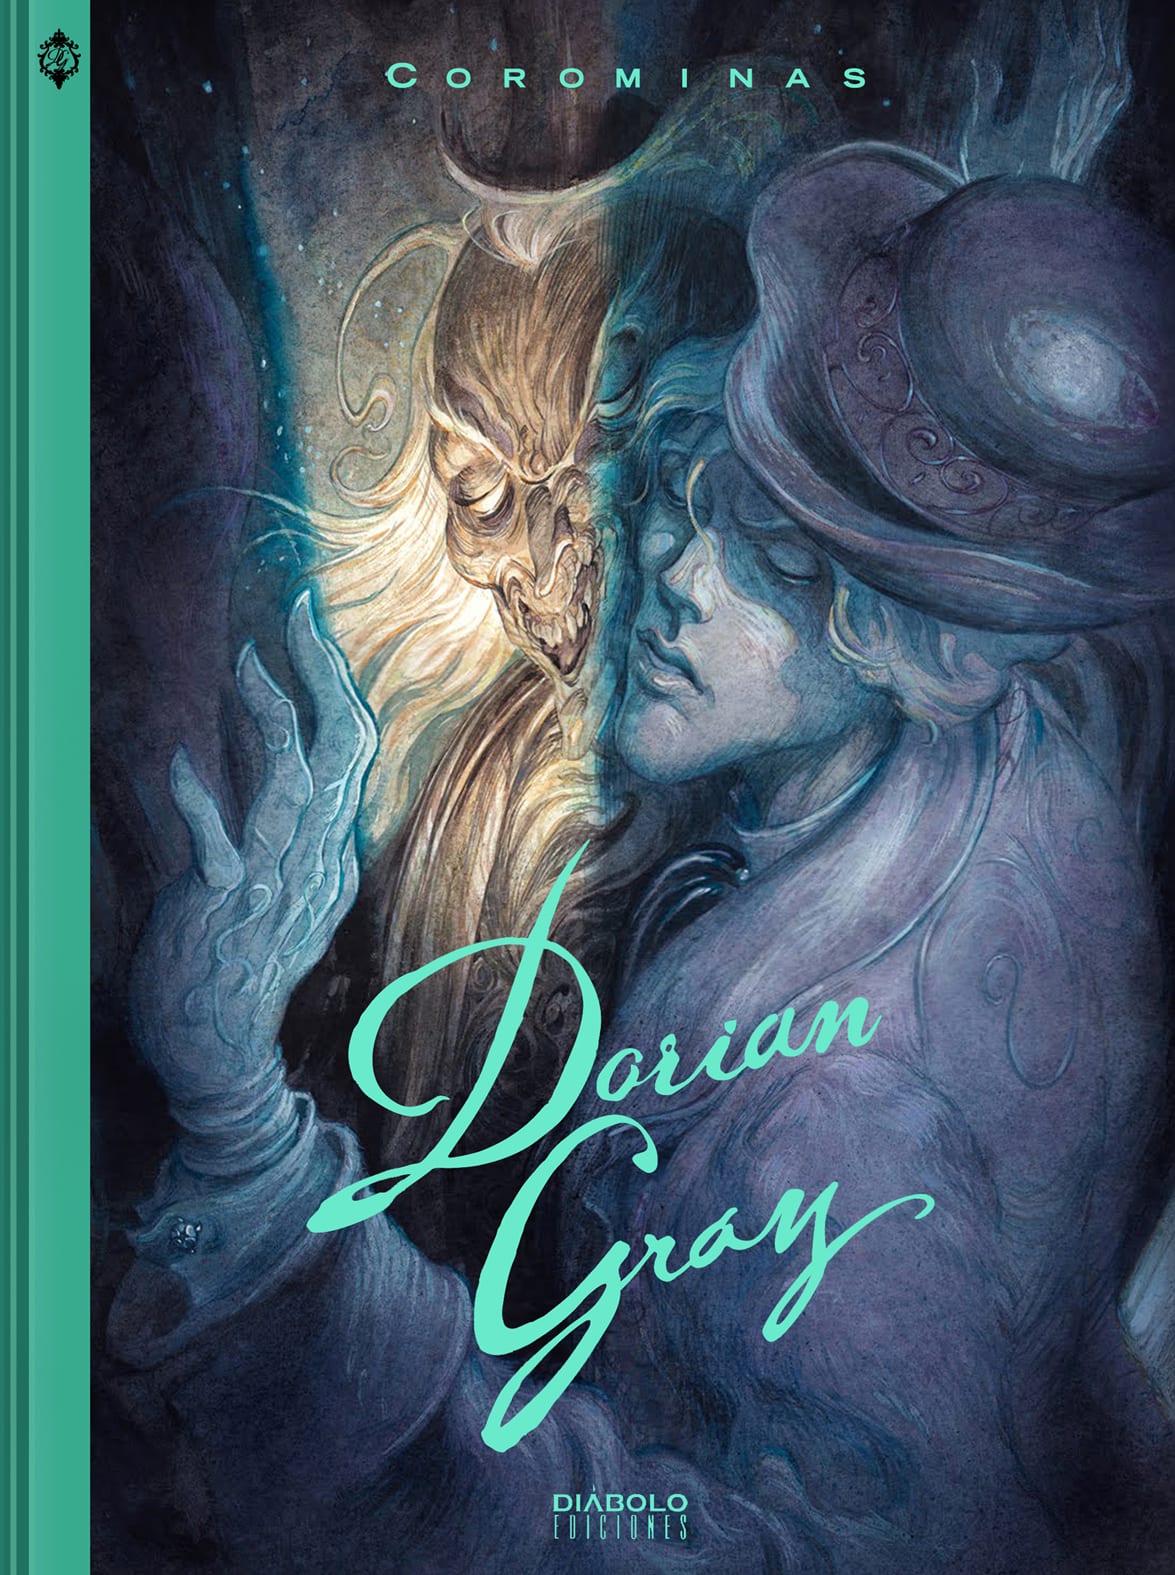 Comic completo Dorian Gray